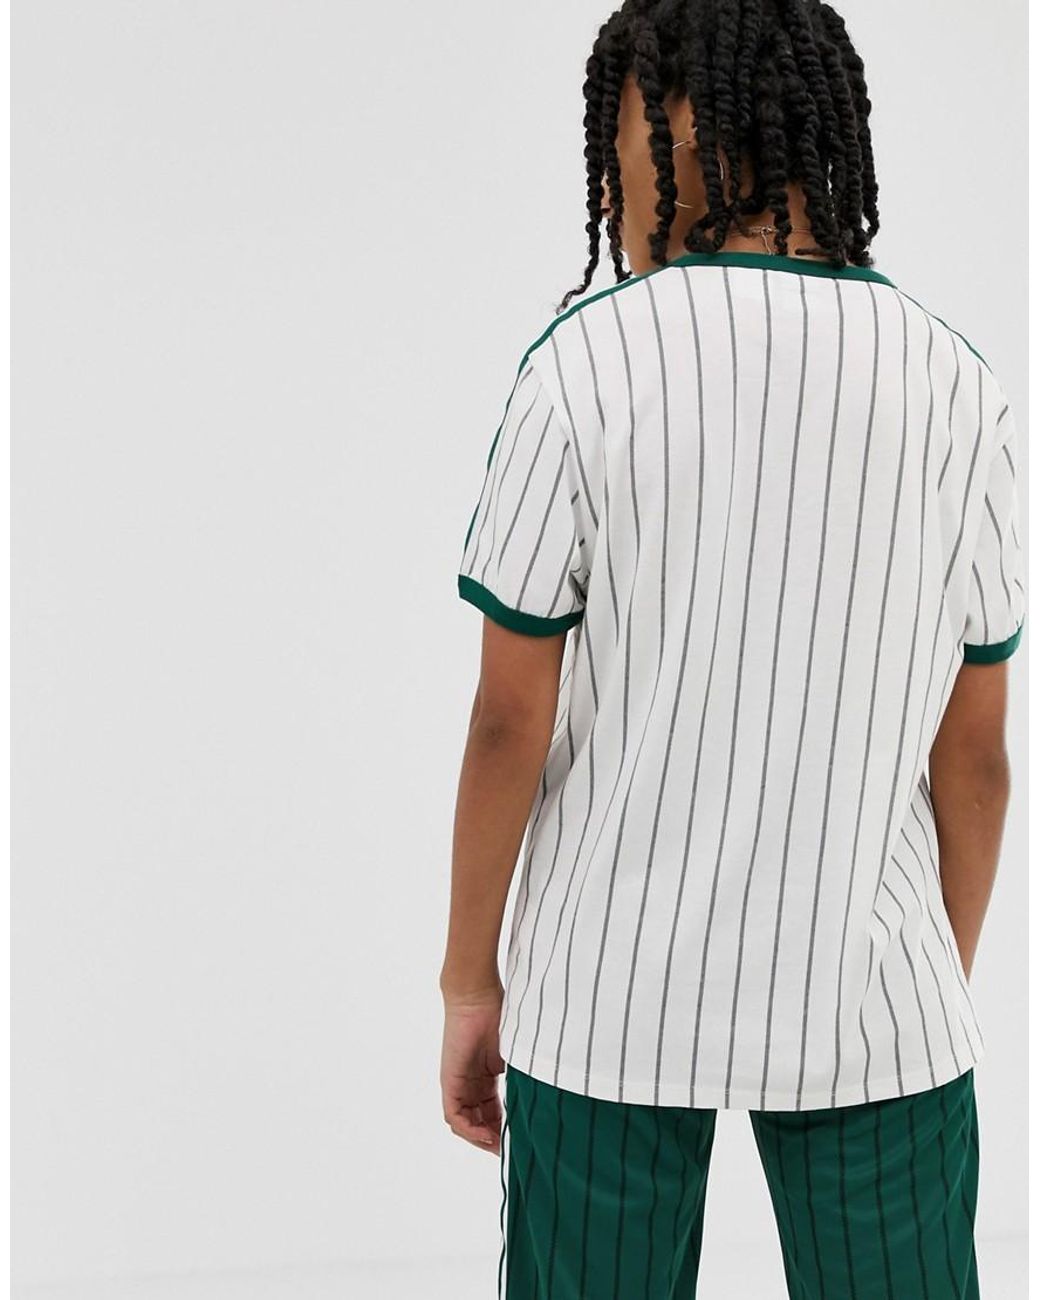 Inquieto Planeta retrasar Camiseta blanca con rayas verdes adidas Originals de color Verde | Lyst